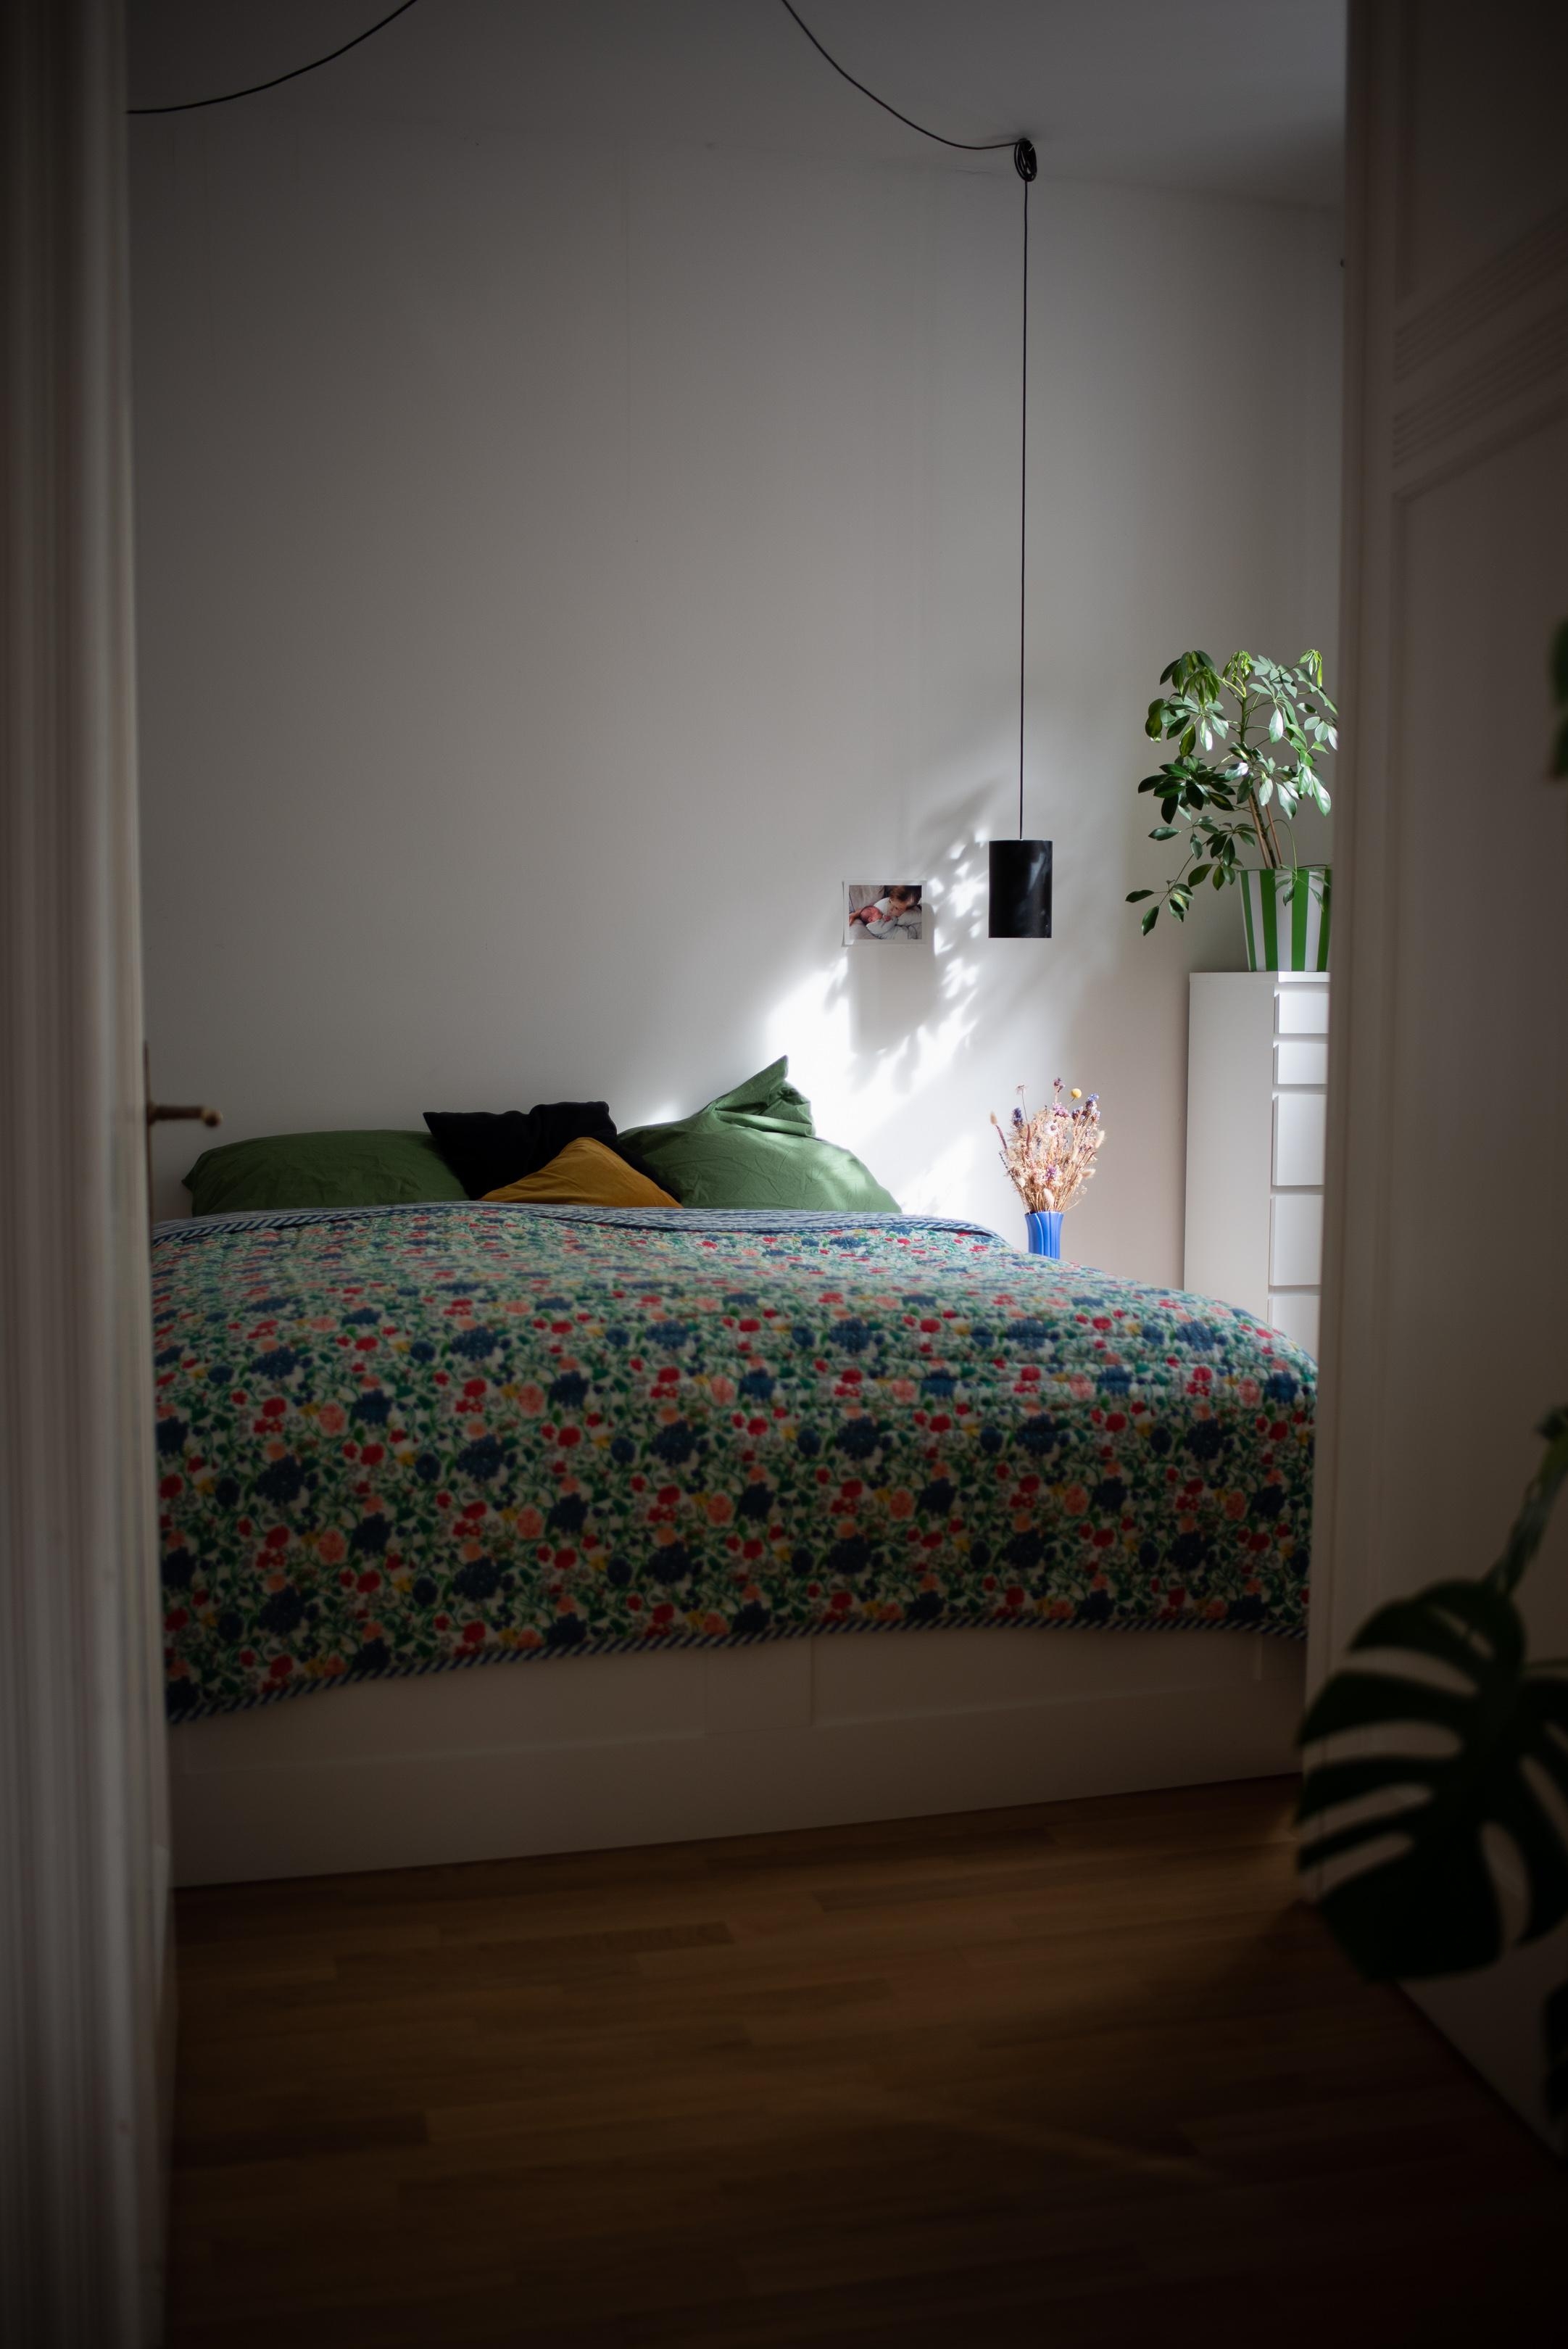 Bettzeit 💚 #bedroom #quilt #bed #tagesdecke #schlafzimmer